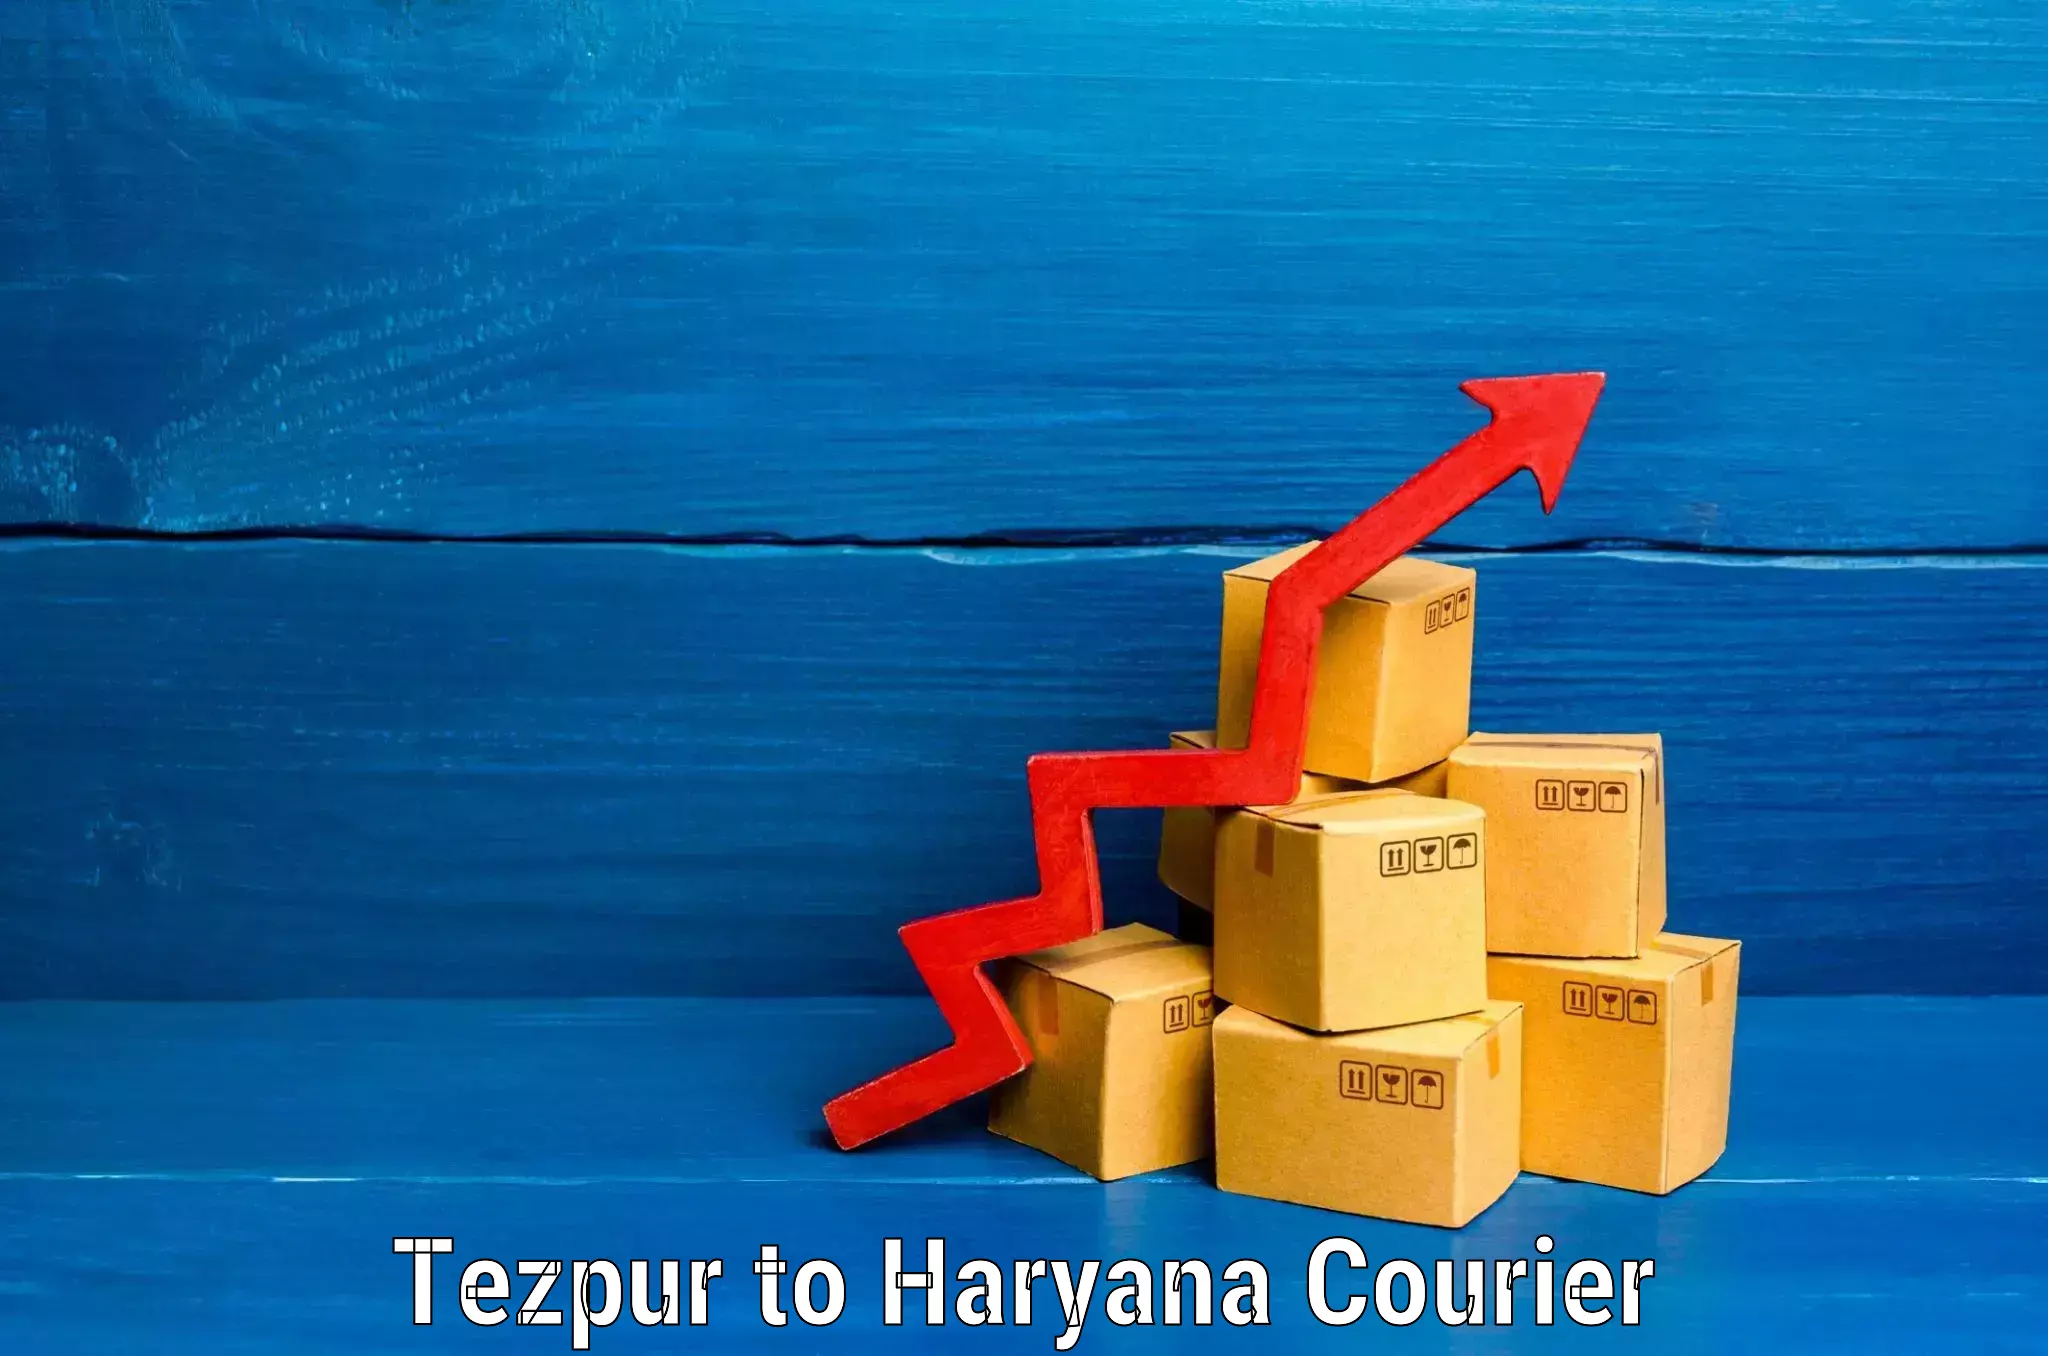 Digital baggage courier Tezpur to Bilaspur Haryana